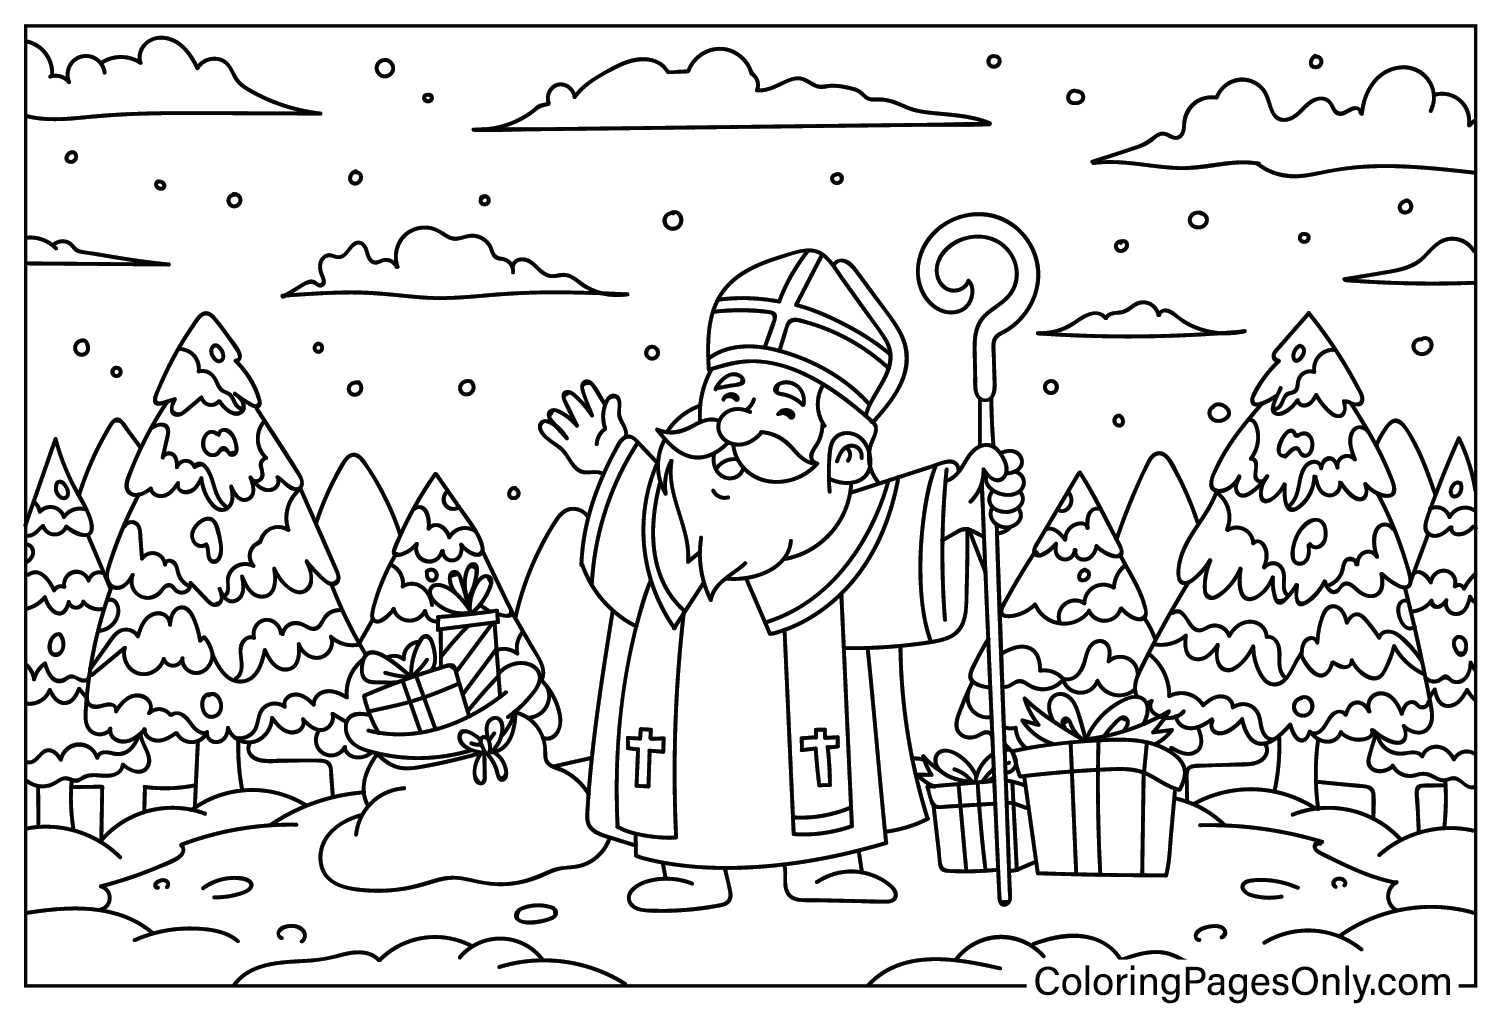 Pagina da colorare stampabile gratuita di San Nicola dal giorno di San Nicola